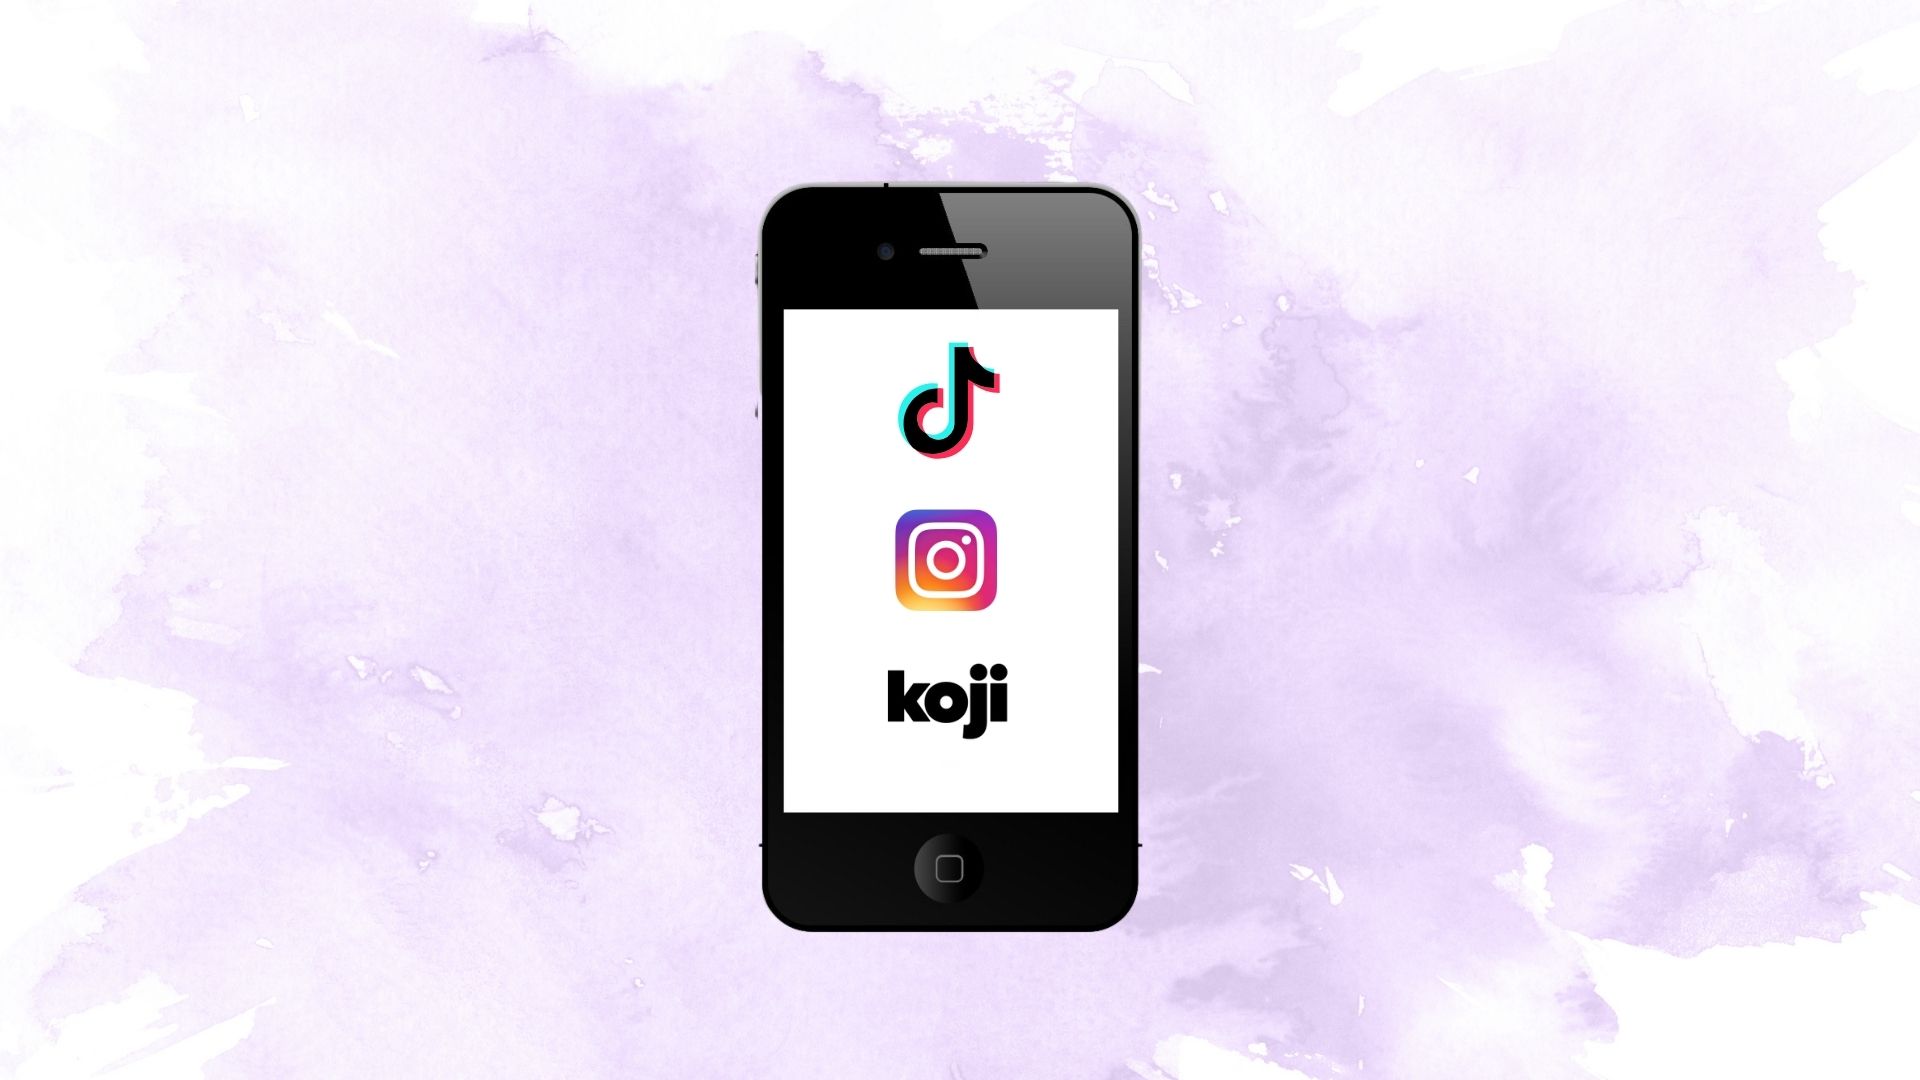 Icone di Tik Tok, Instagram e Koji sullo schermo di uno smartphone